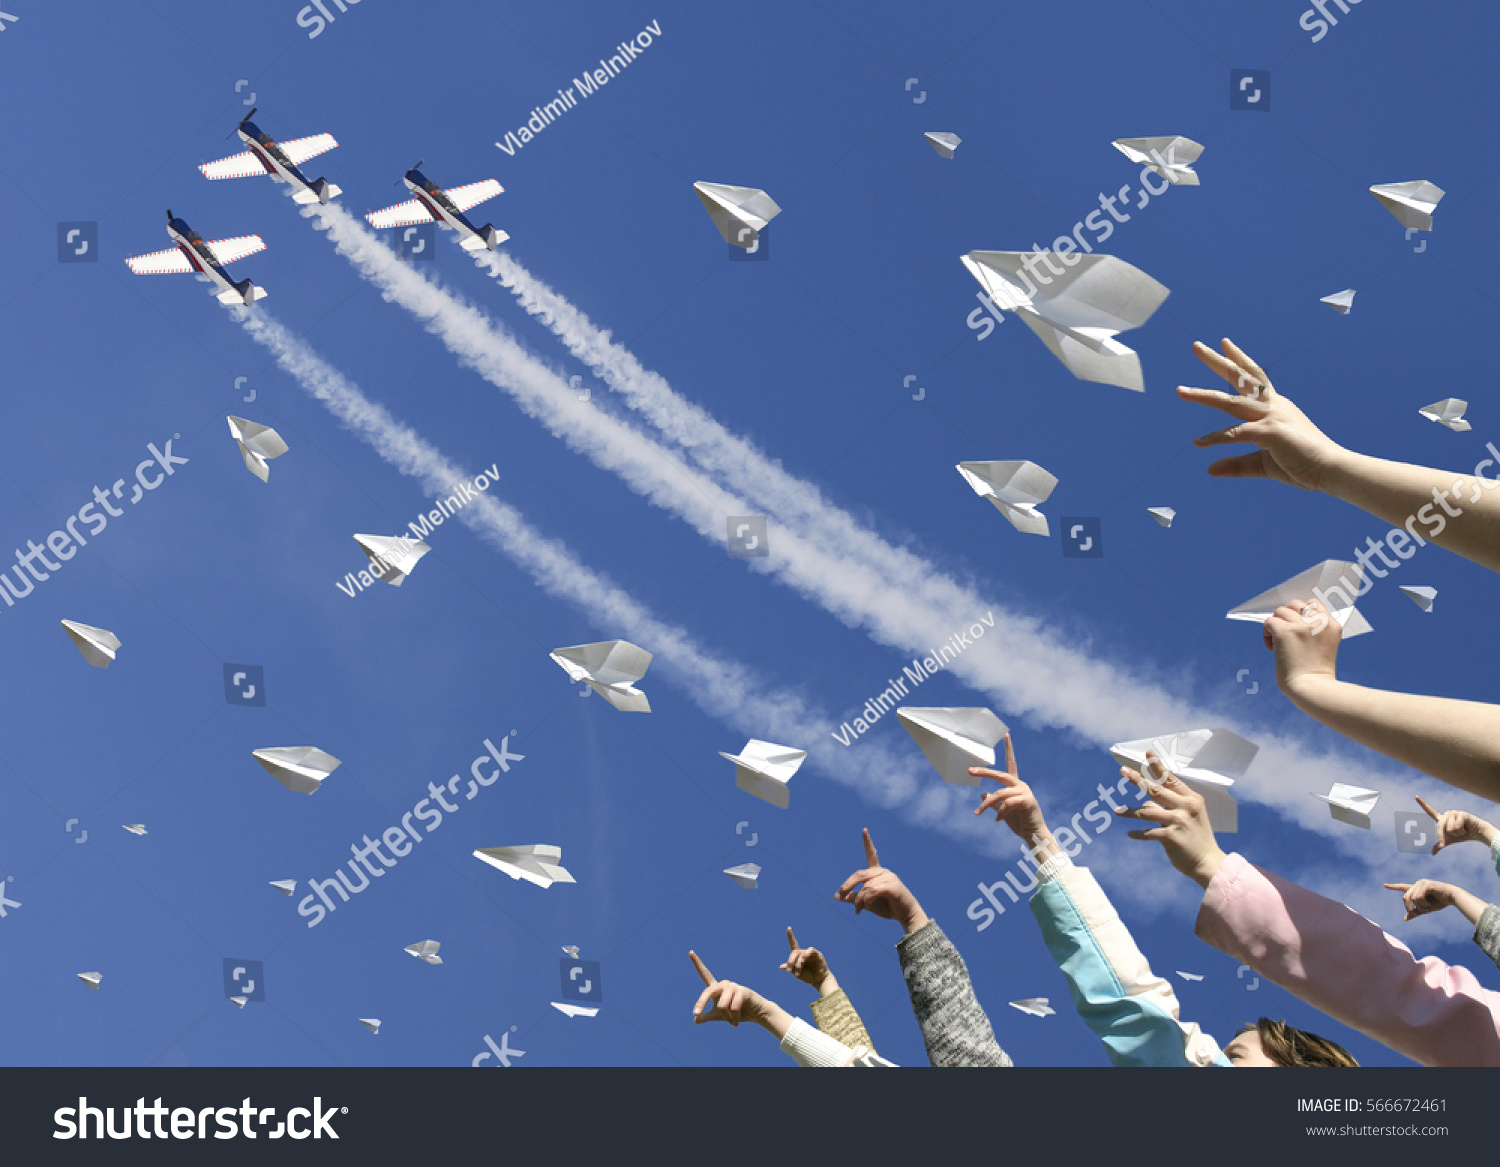 Мой бумажный самолет отправляется в полет. Полет бумажного самолетика. Много бумажных самолетиков. Фестиваль бумажных самолетиков. Запускает бумажный самолетик.